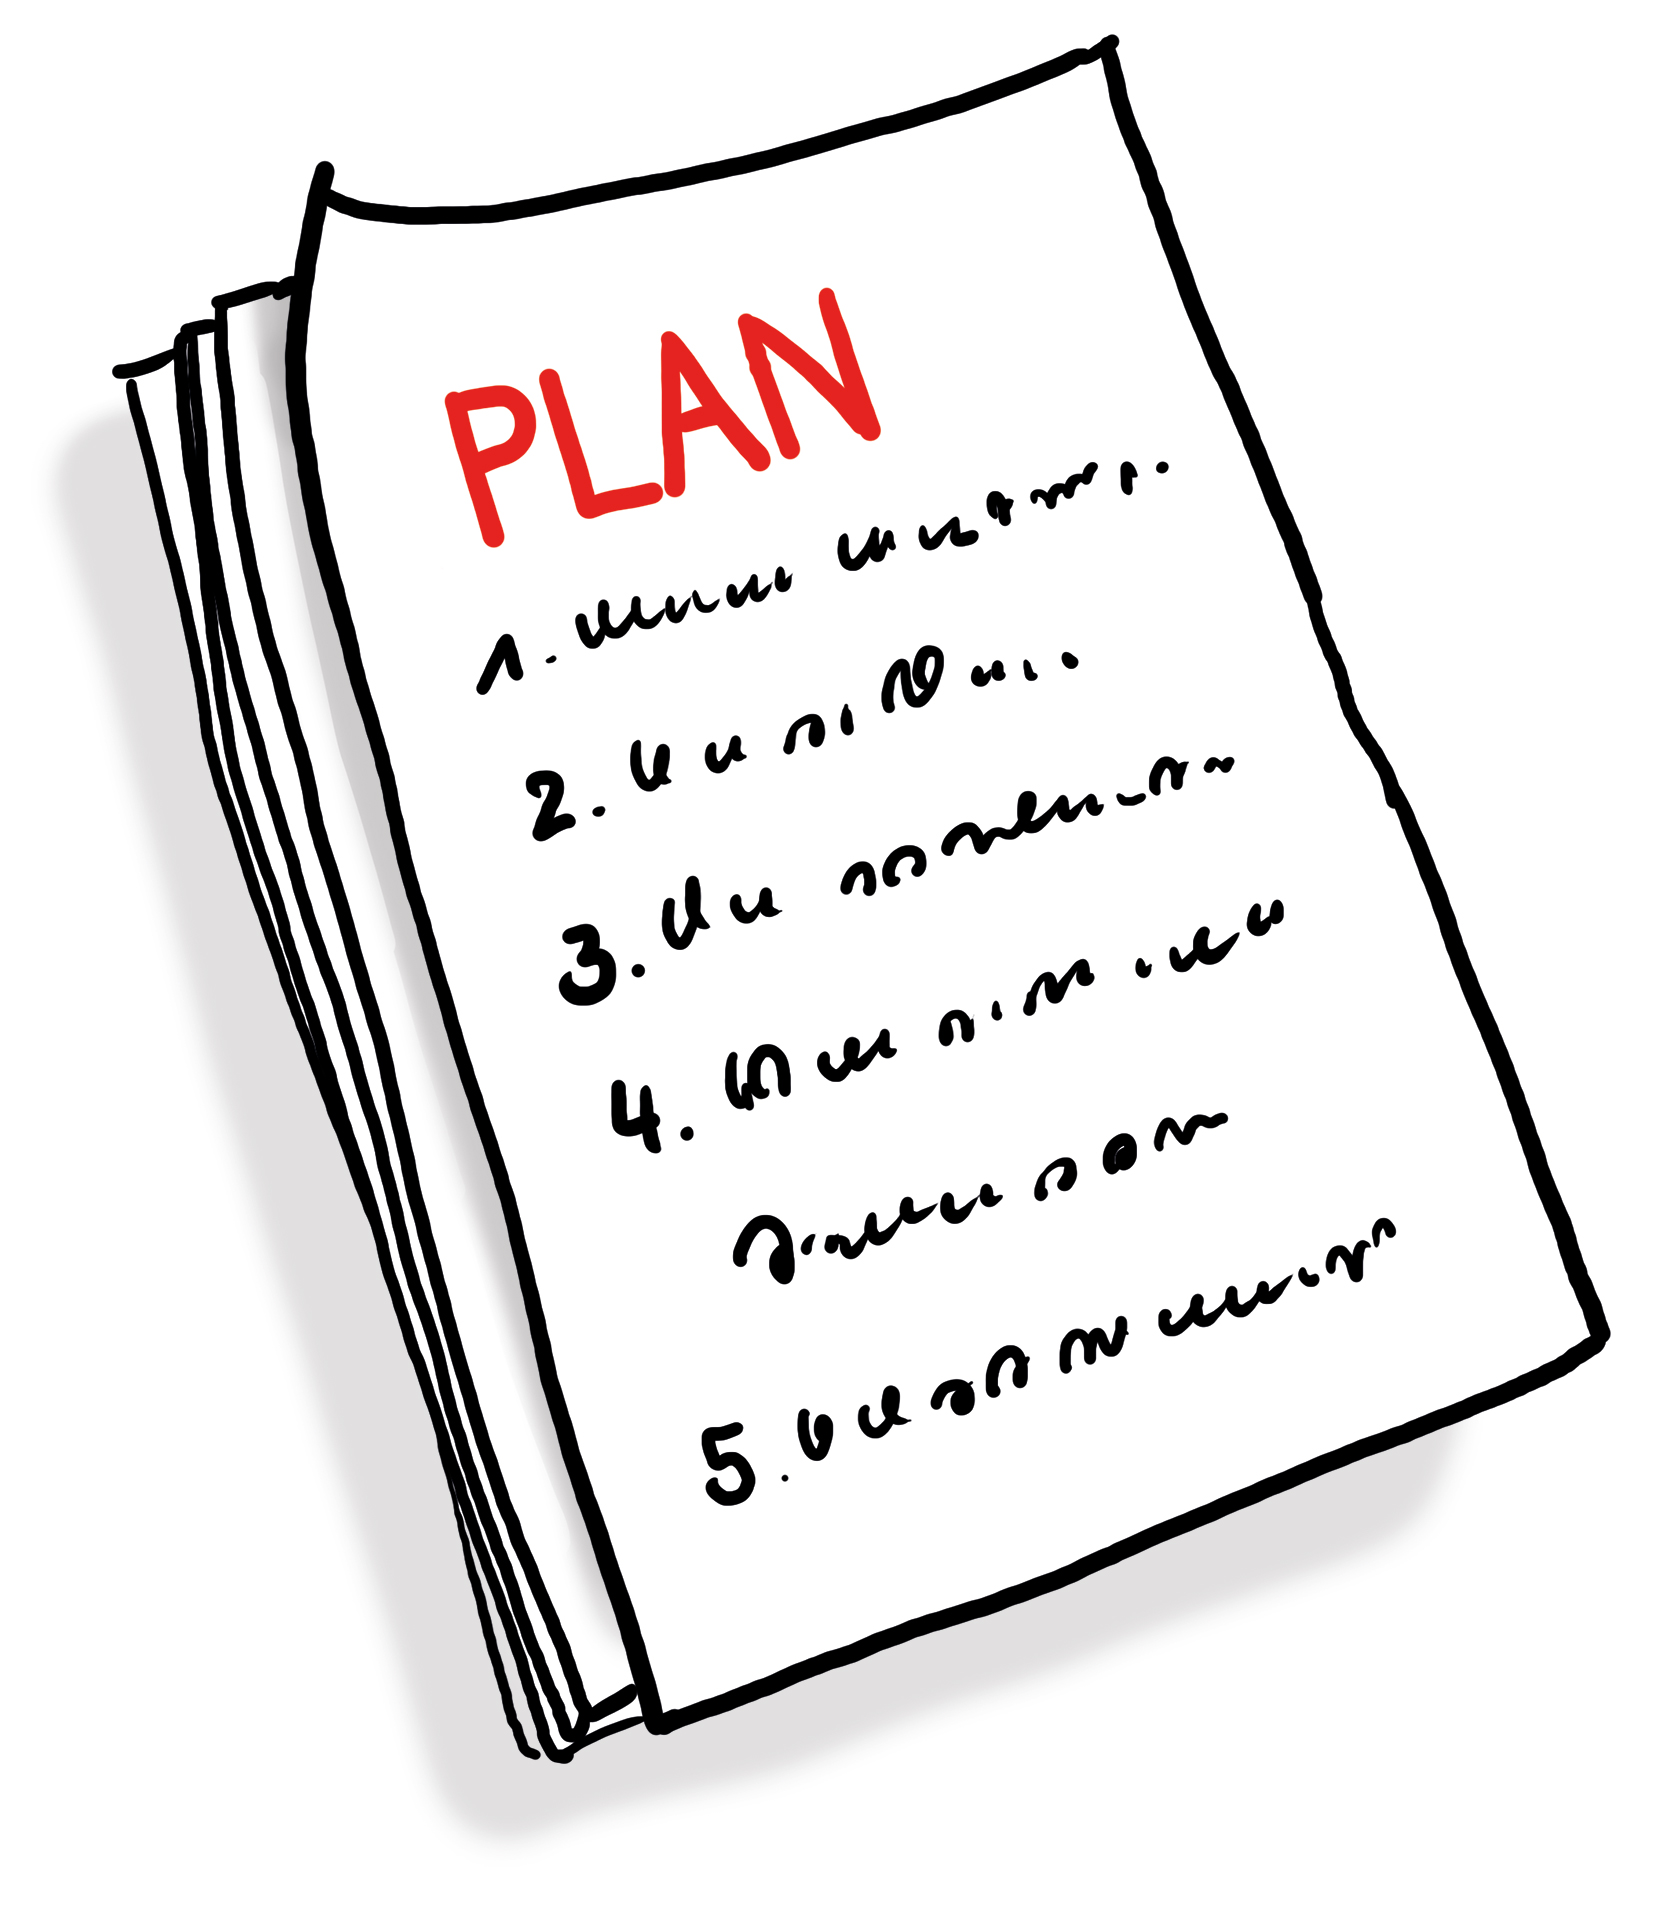 Ein Papierstapel mit der Überschrift "Plan"